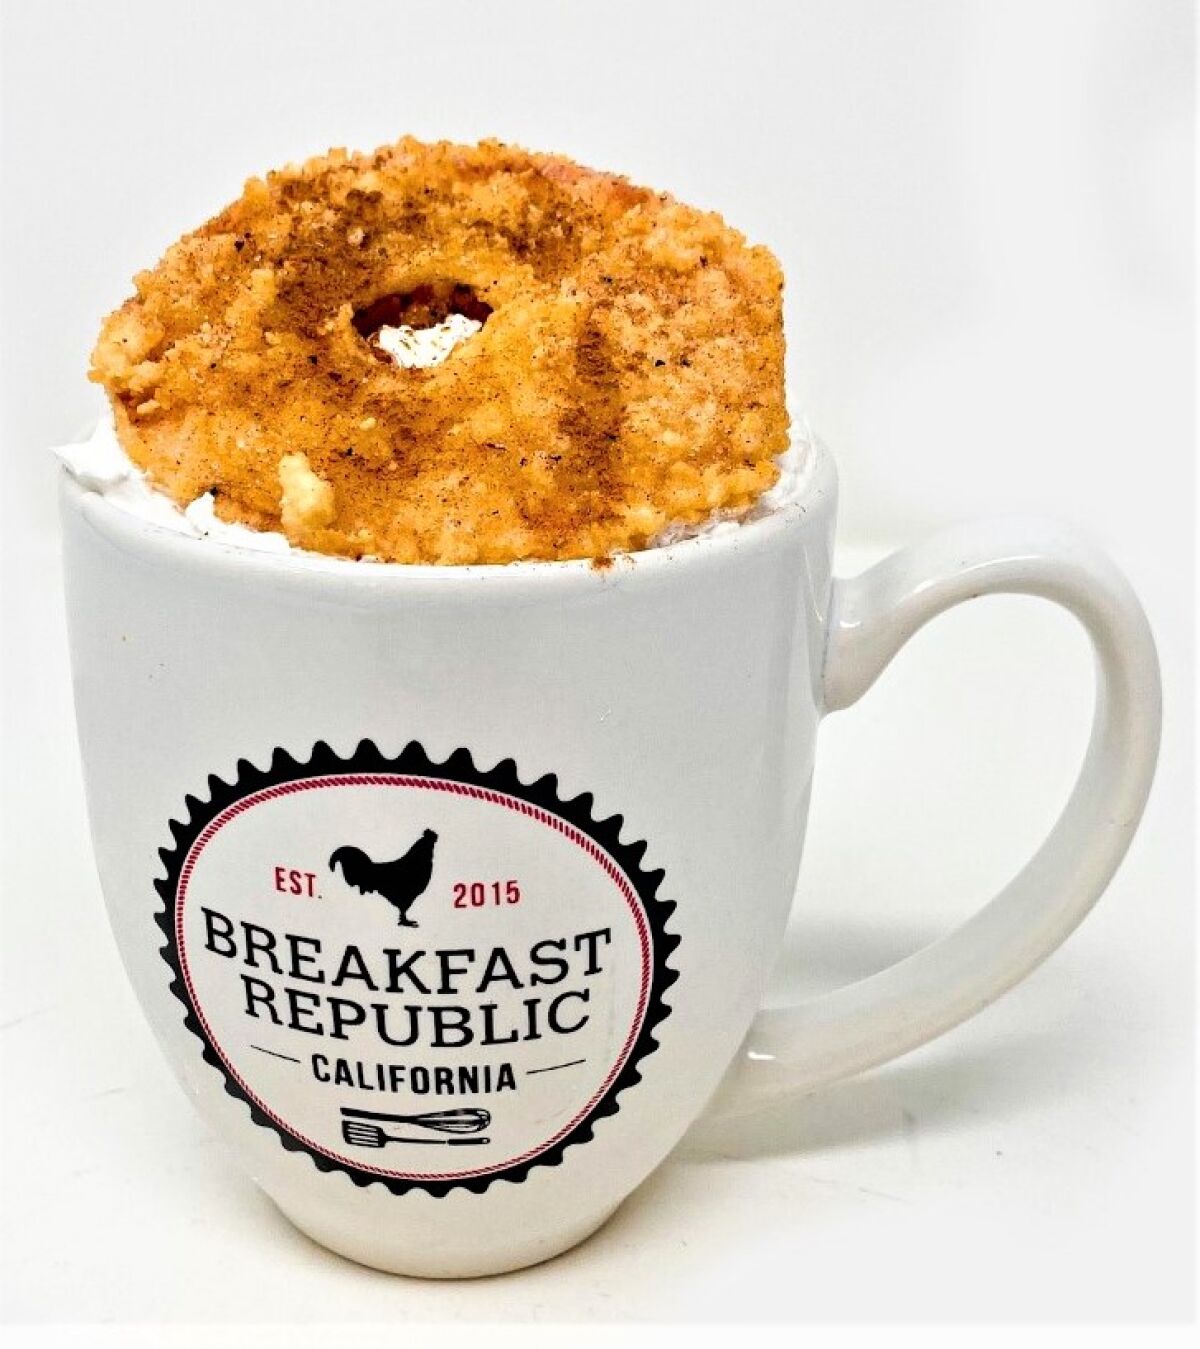 Apple Pie Chai Latte from Breakfast Republic